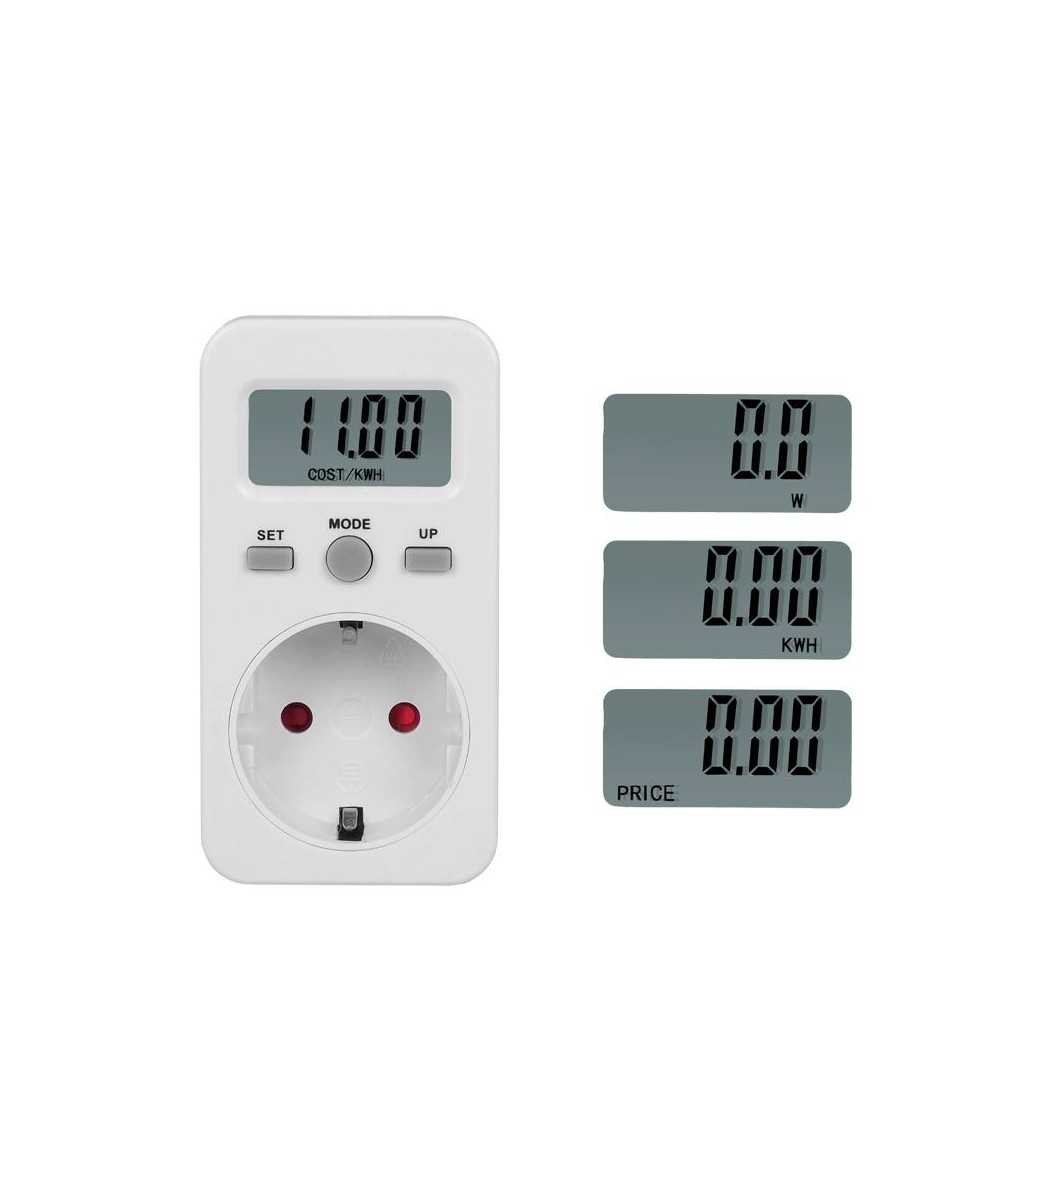 Digital wattmeter with German plug, power consumption meter, energy meter